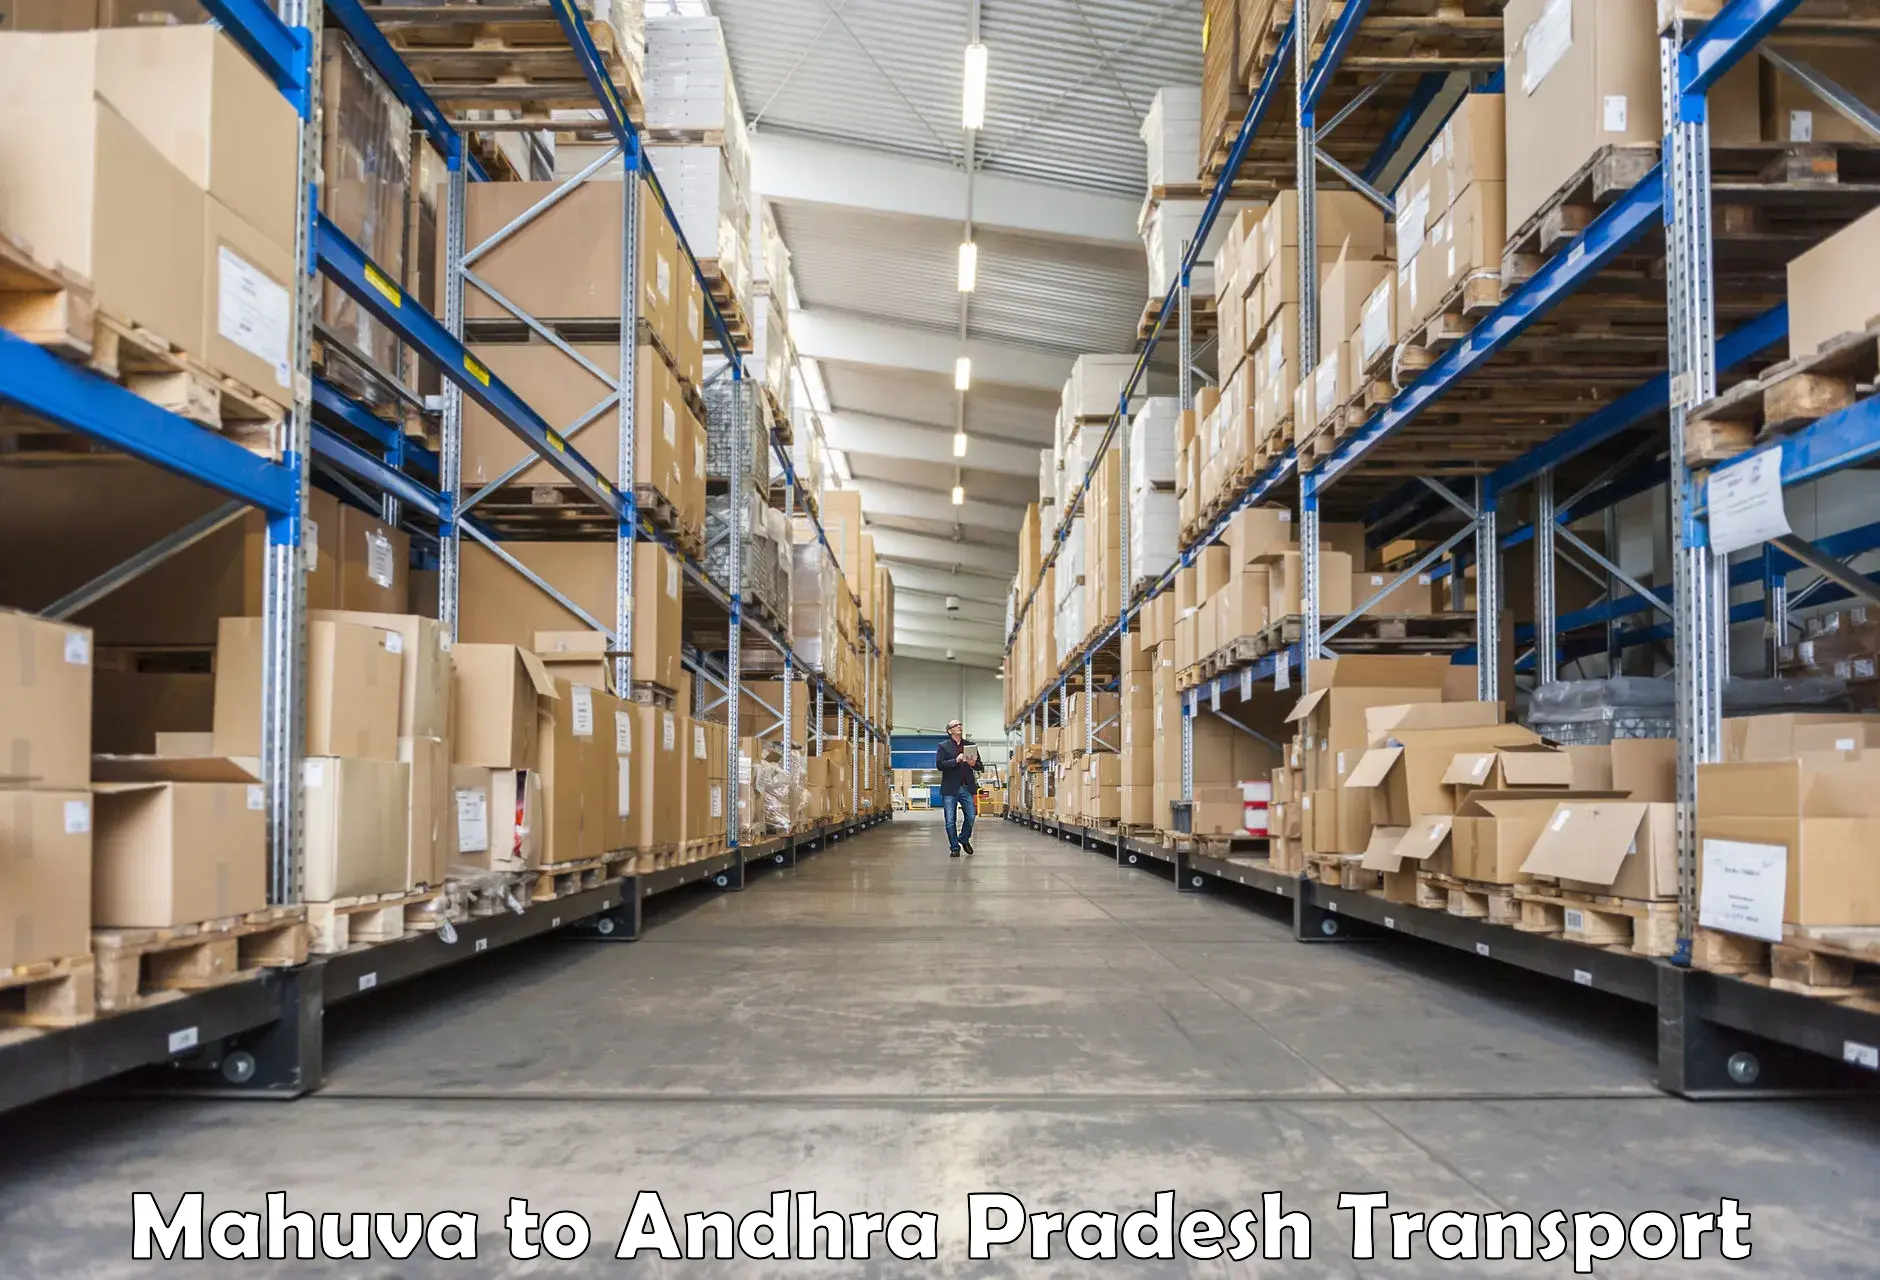 Commercial transport service Mahuva to East Godavari